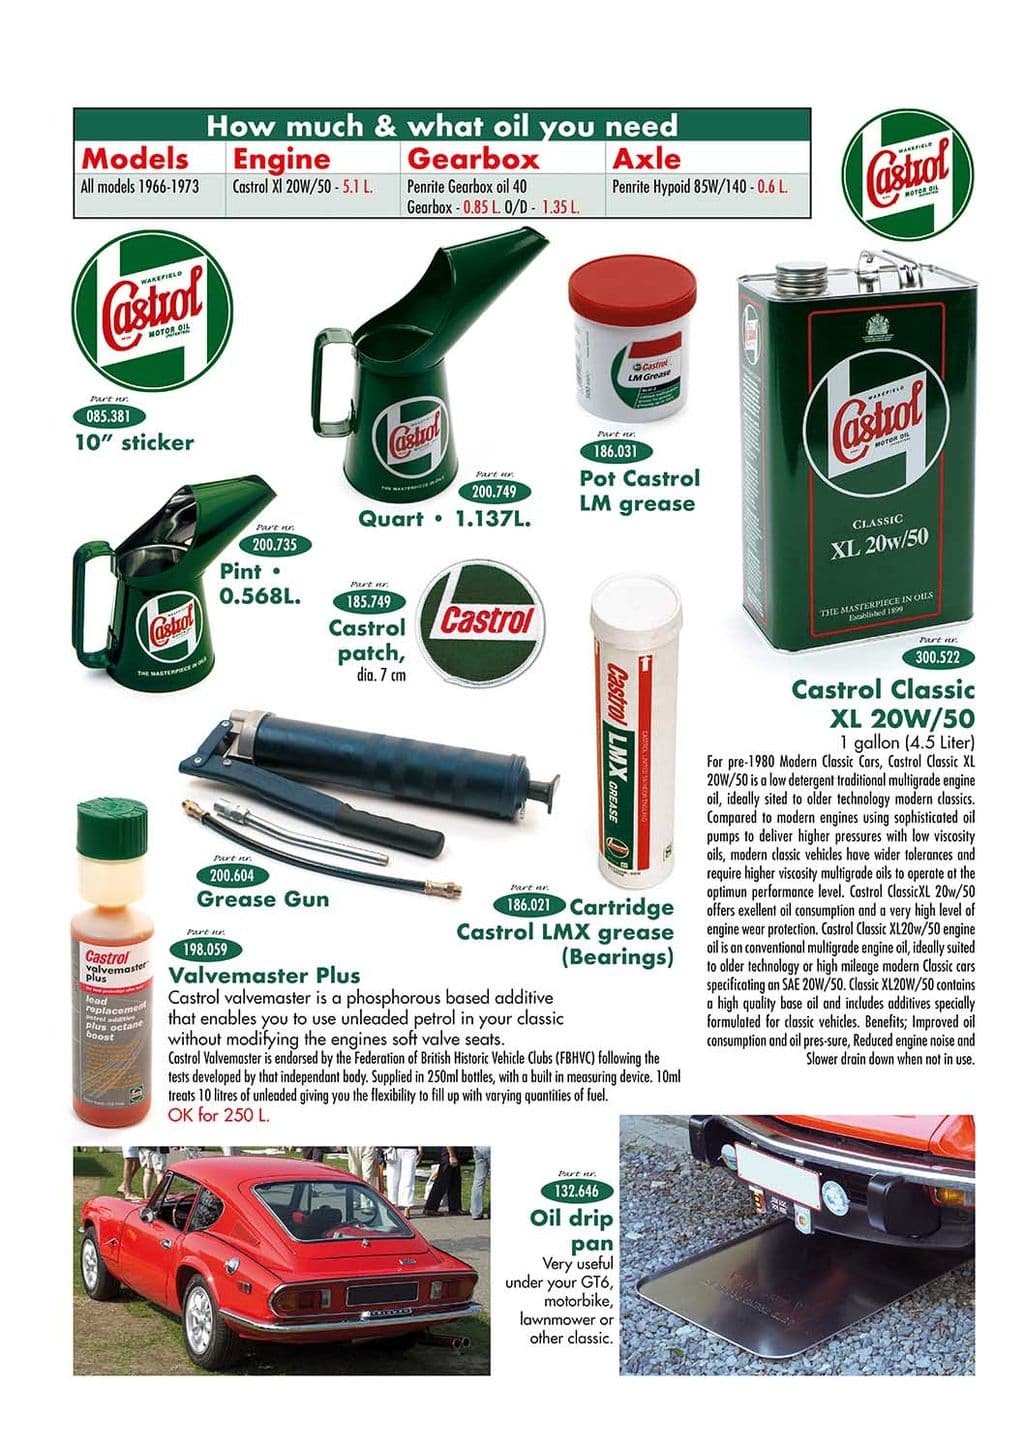 Oil cans & drip pan - Vassoio Liquidi - Manutenzione e Deposito - Jaguar XJ6-12 / Daimler Sovereign, D6 1968-'92 - Oil cans & drip pan - 1